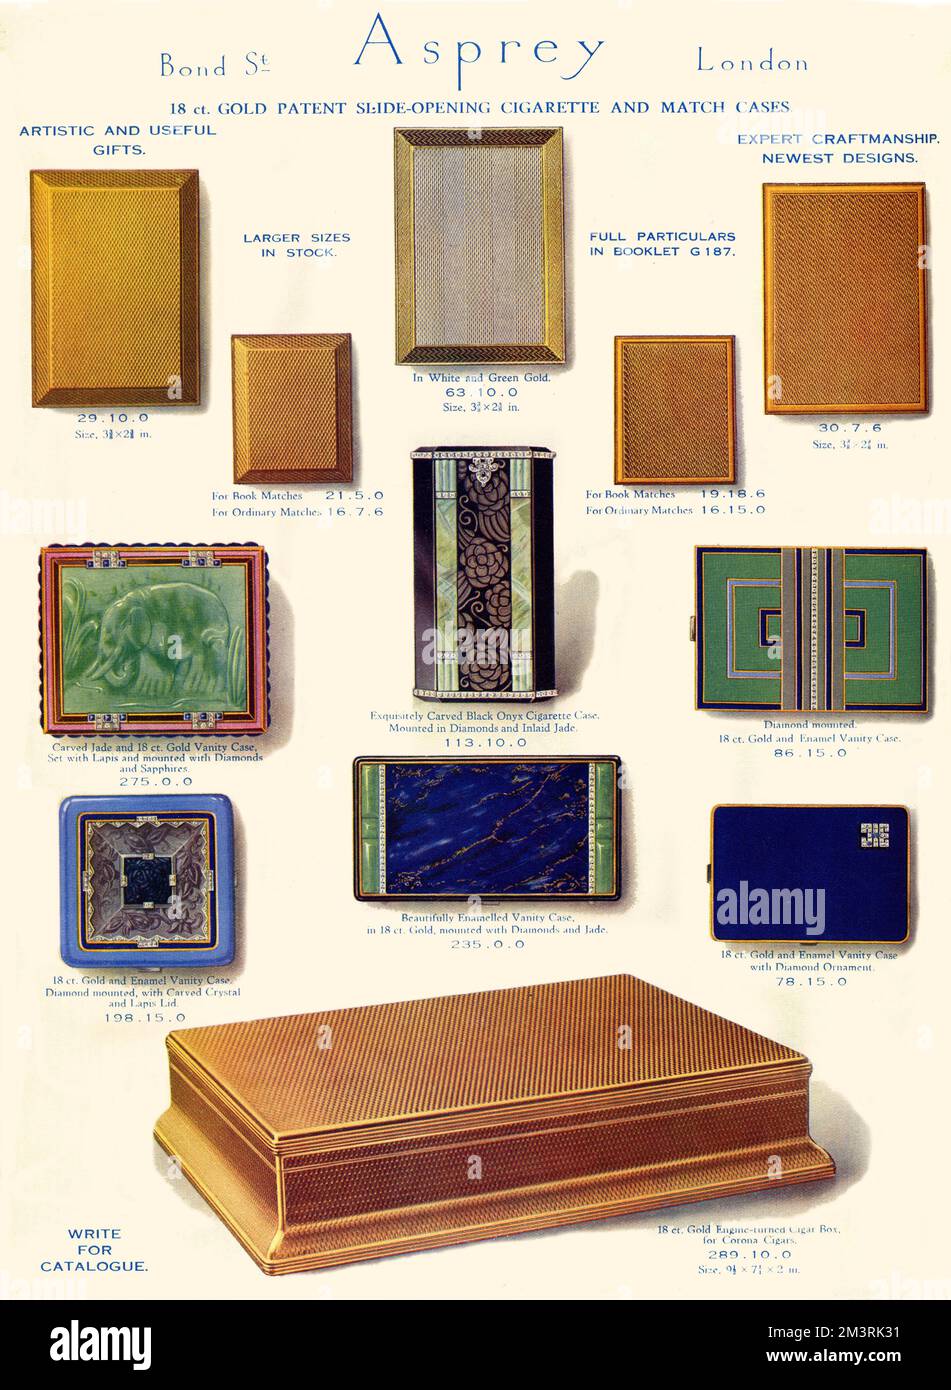 Pubblicità per il marchio britannico di lusso gamma Asprey di sigarette e match case. 1929 Foto Stock